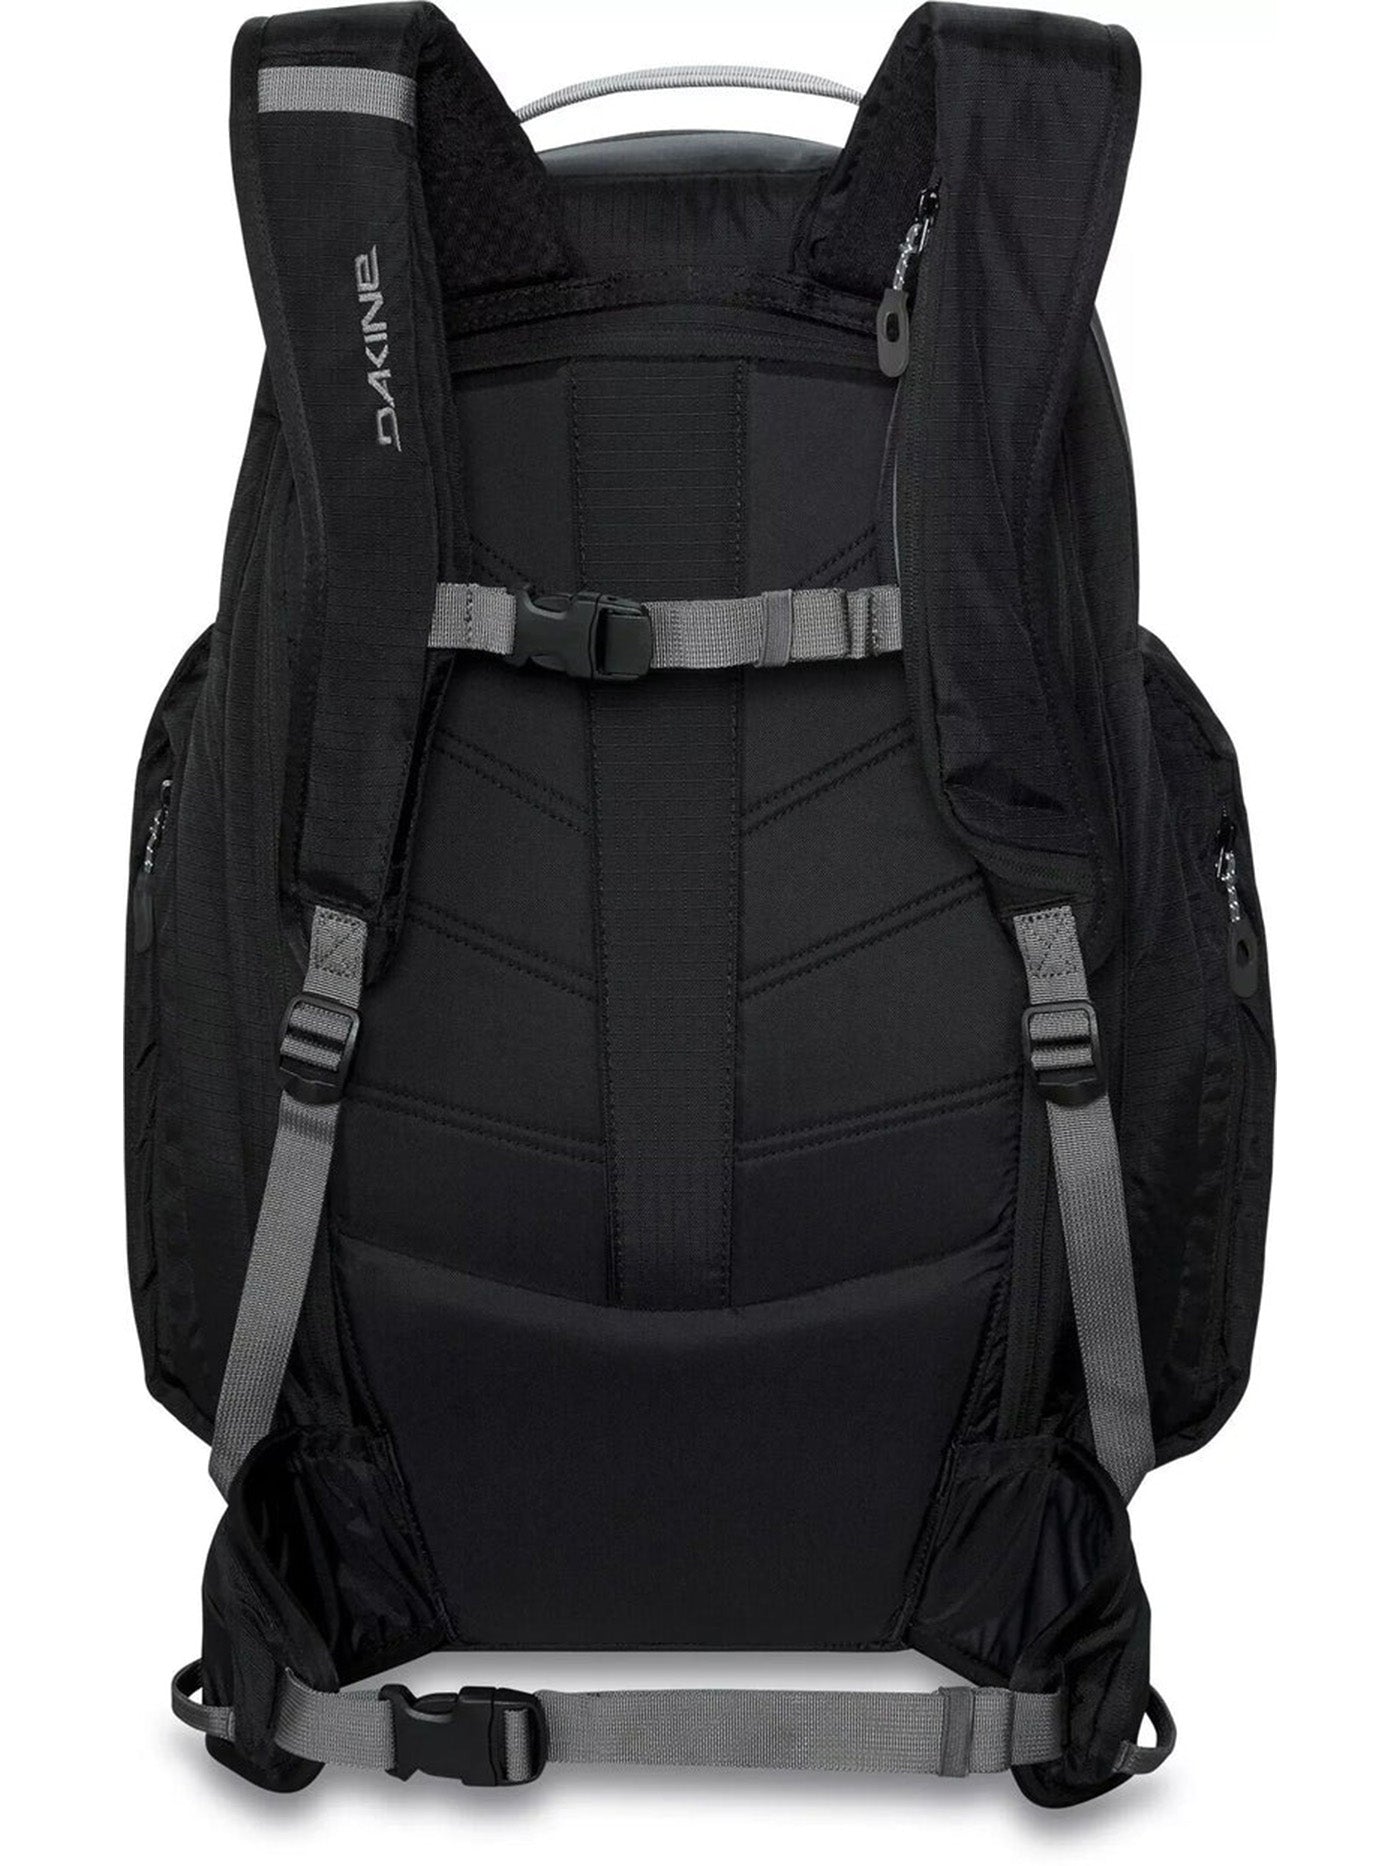 Dakine Mission Pro 32L Backpack